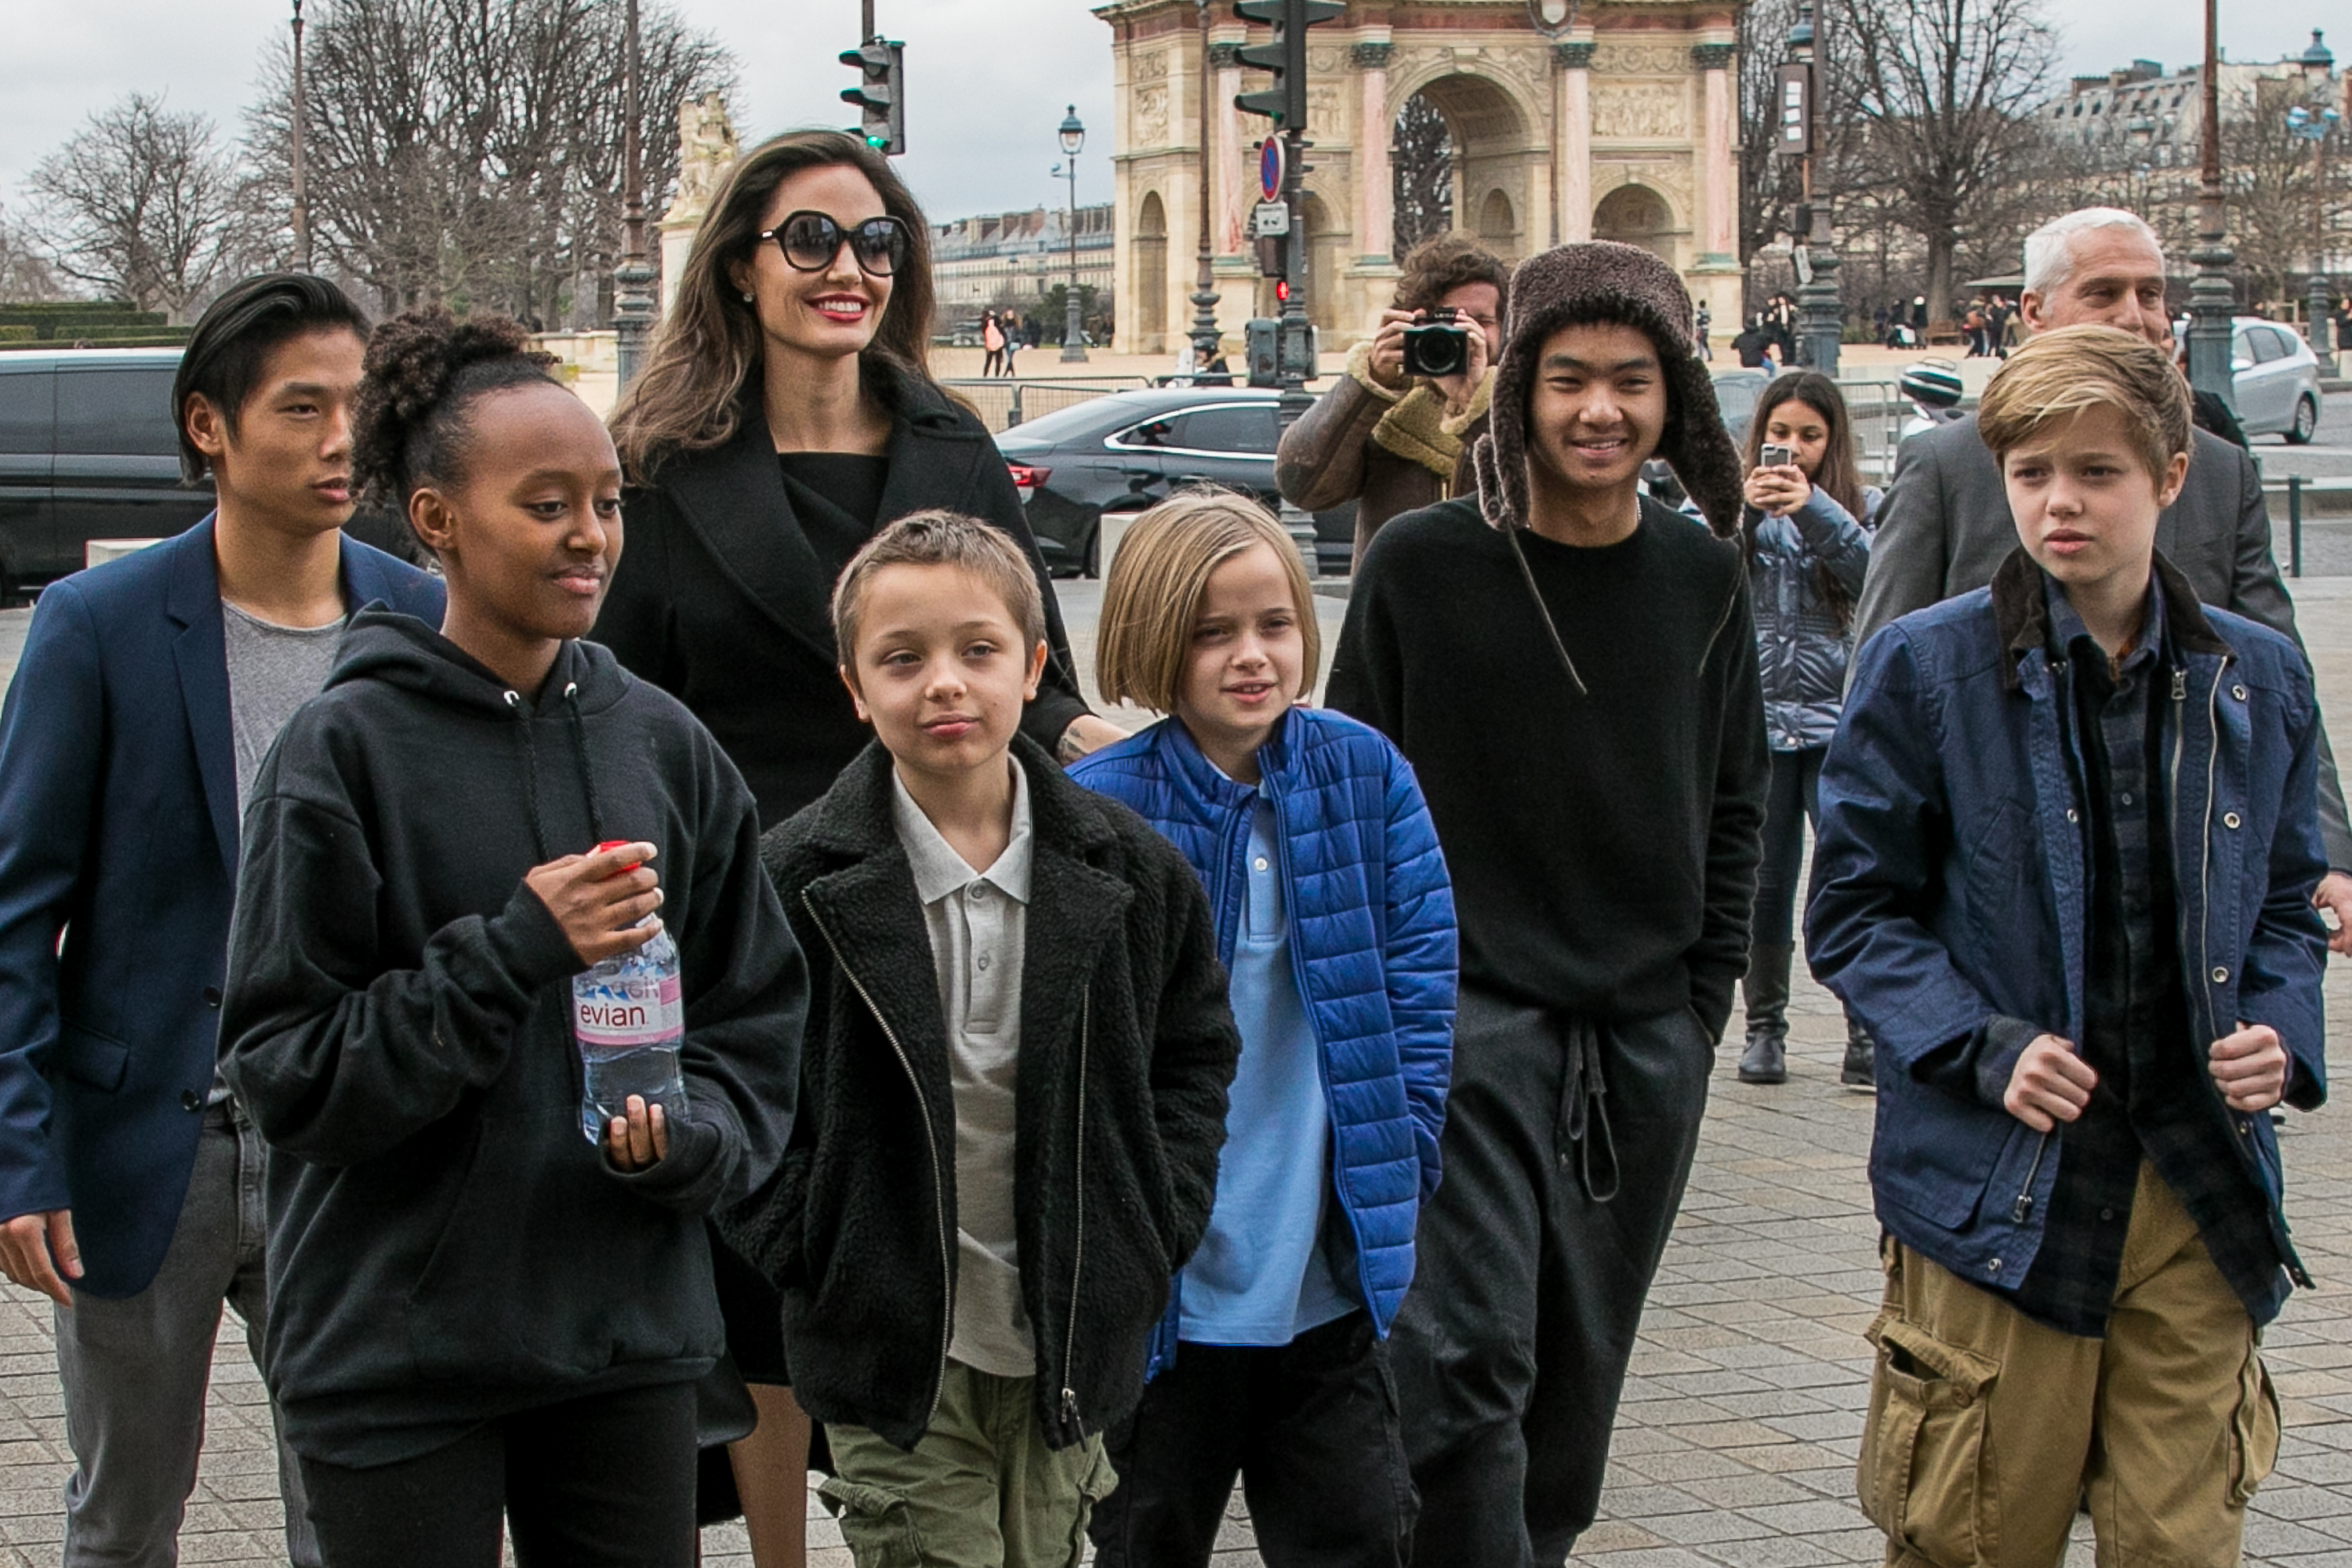 Angelina Jolie y sus hijos Maddox Jolie-Pitt, Shiloh Jolie-Pitt, Vivienne Marcheline Jolie-Pitt, Knox Léon Jolie-Pitt, Zahara Jolie-Pitt y Pax Jolie-Pitt llegando al museo del Louvre, el 30 de enero de 2018 en París, Francia. | Foto: Getty Images